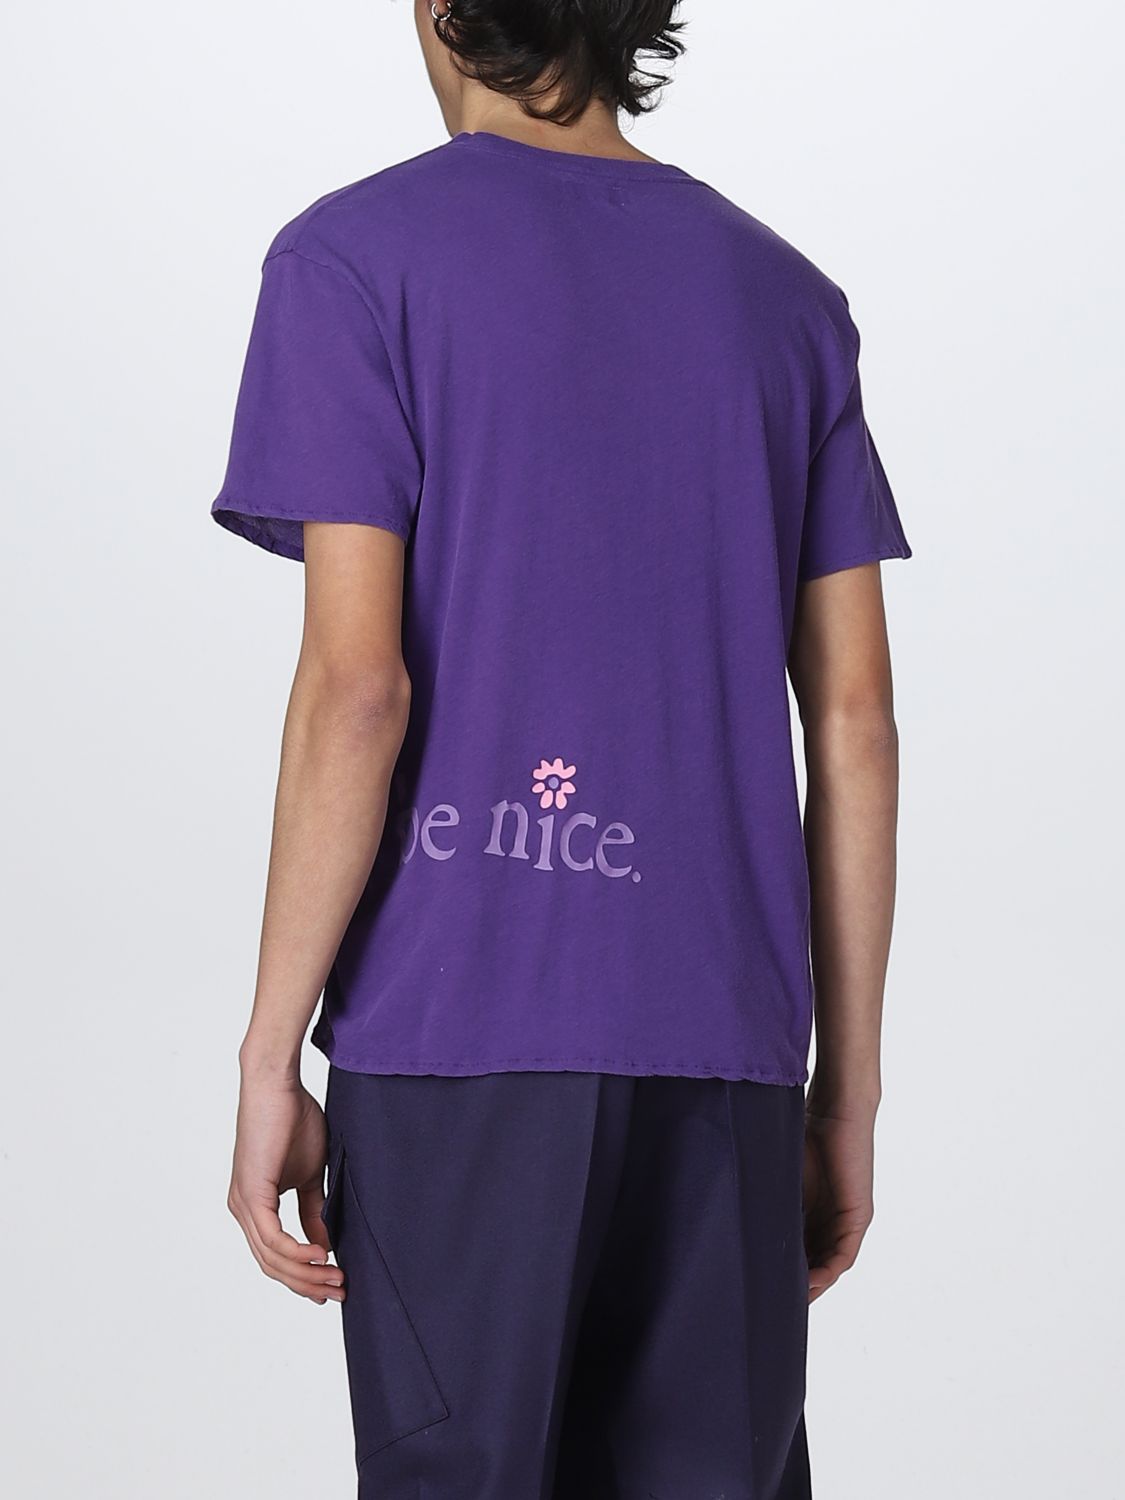 T恤 Erl: Erlt恤男士 紫色 3